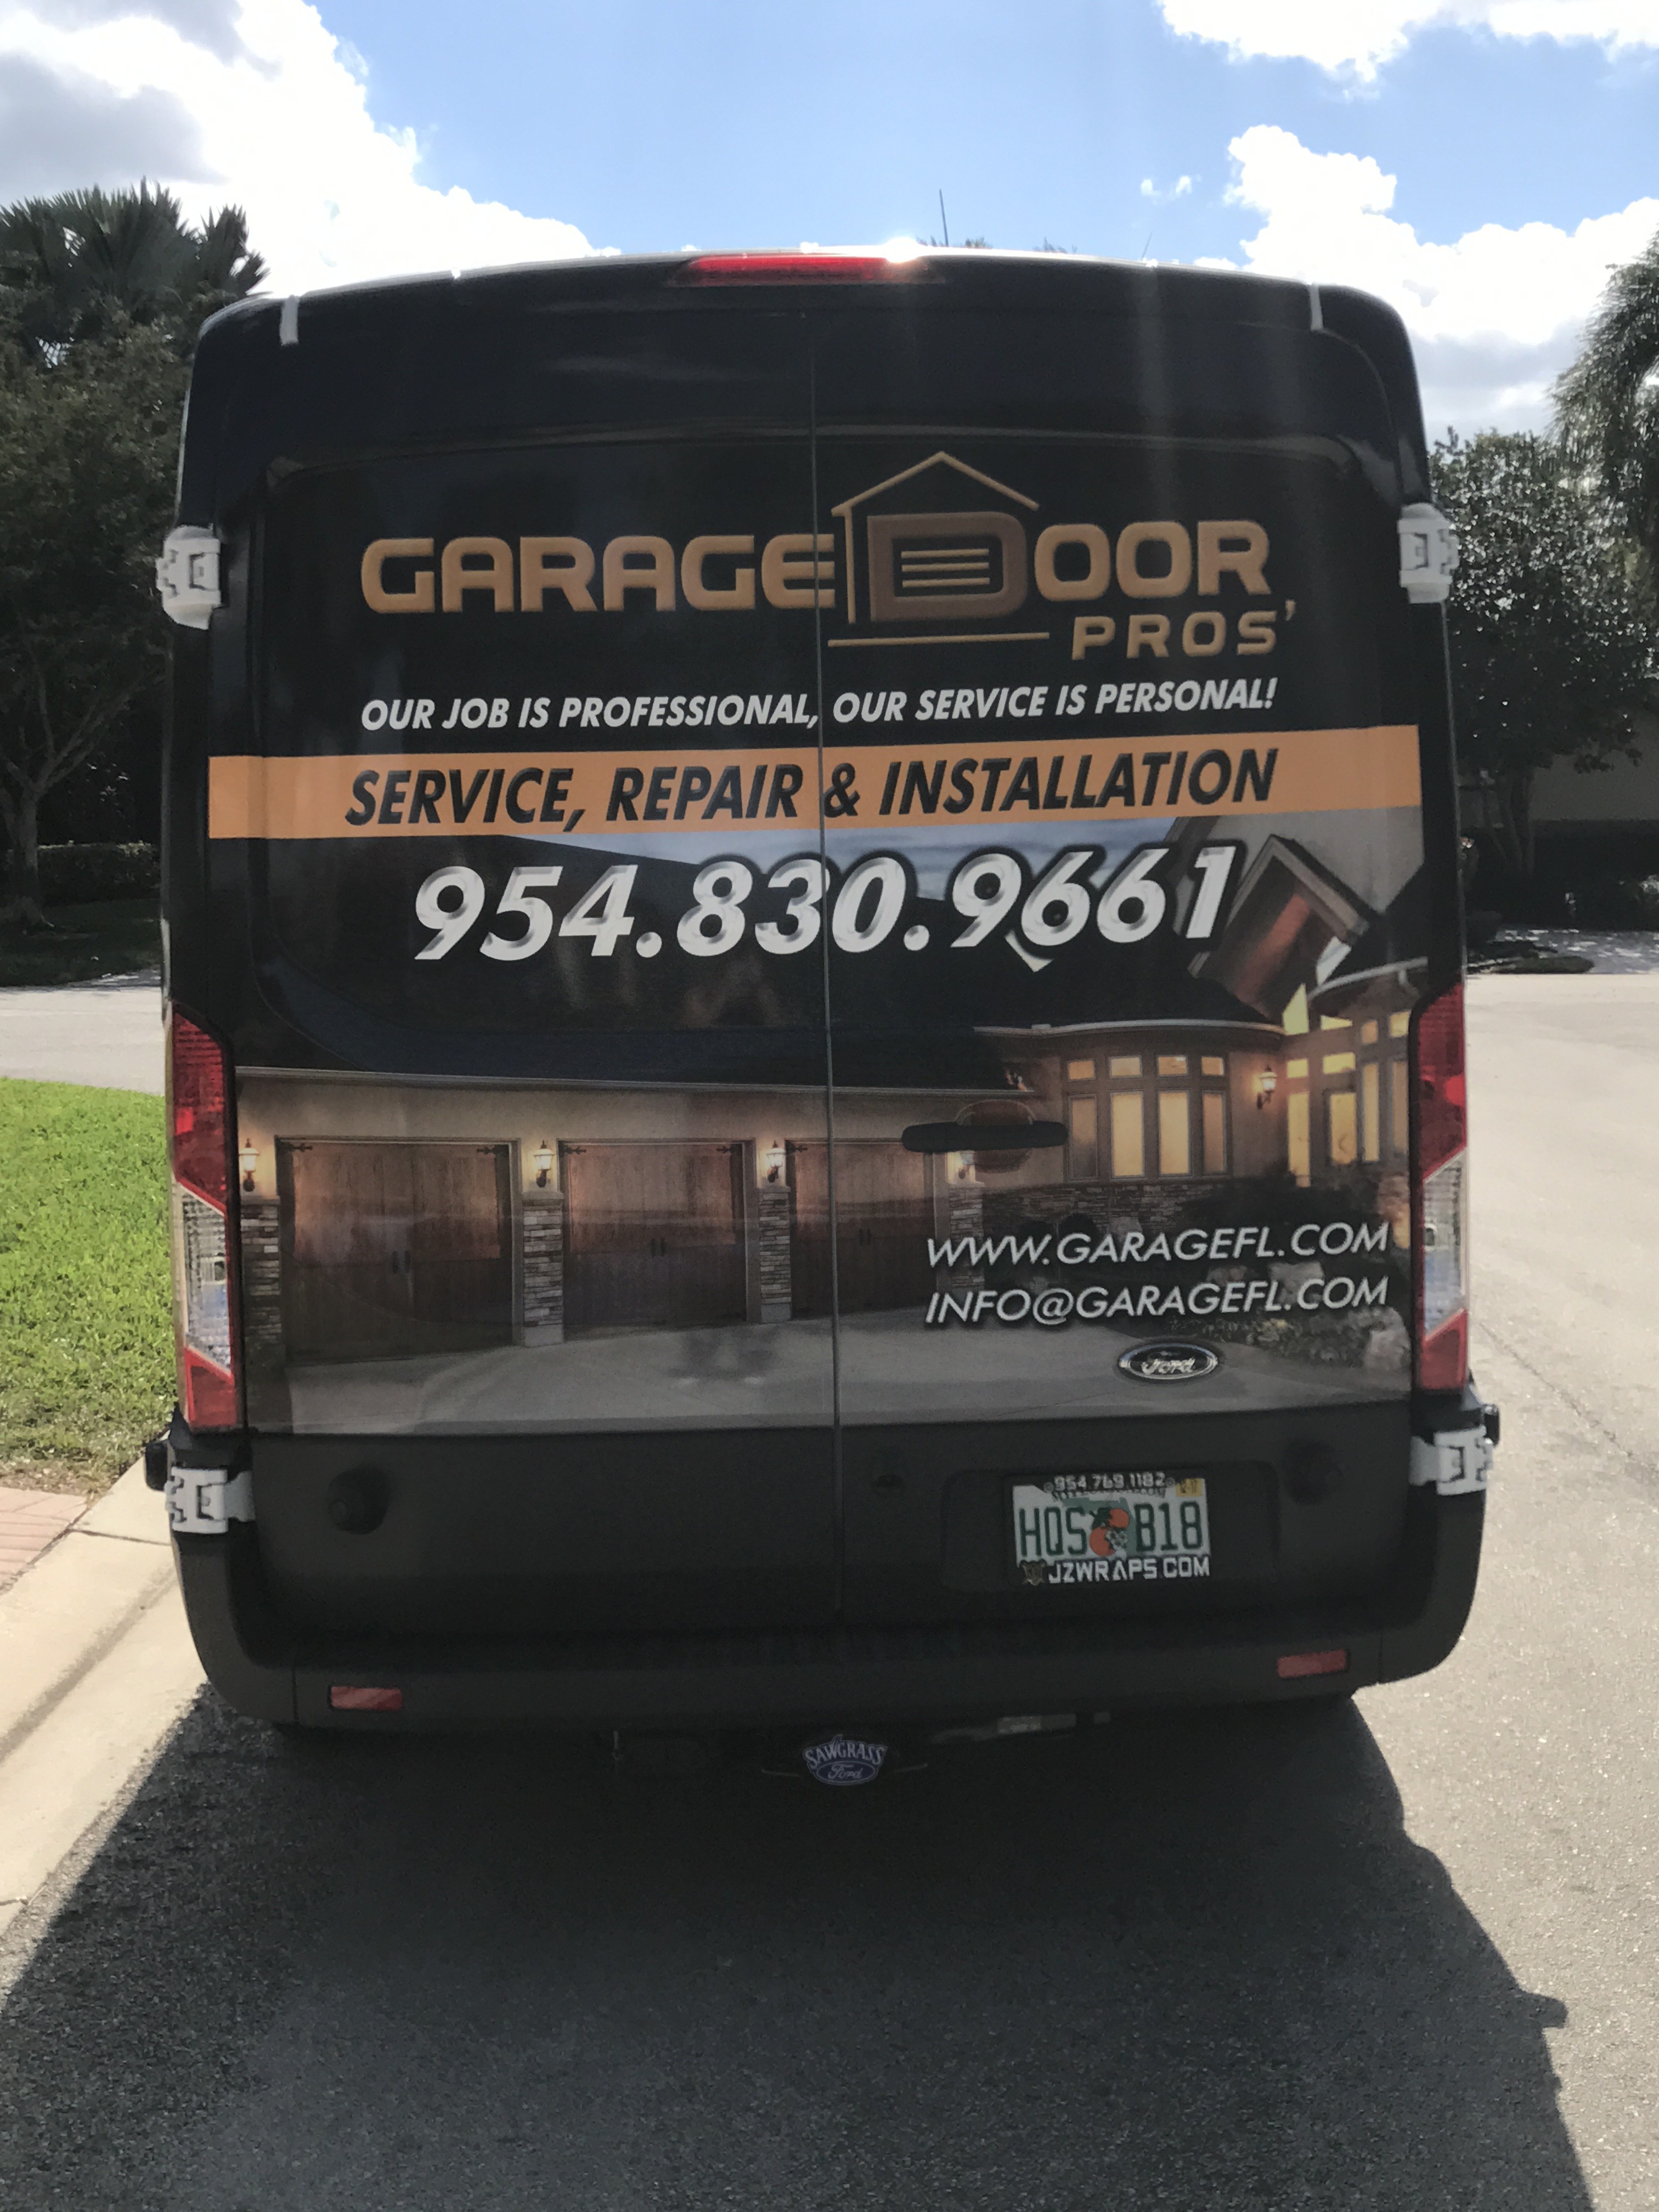 Replacing your Garage Door